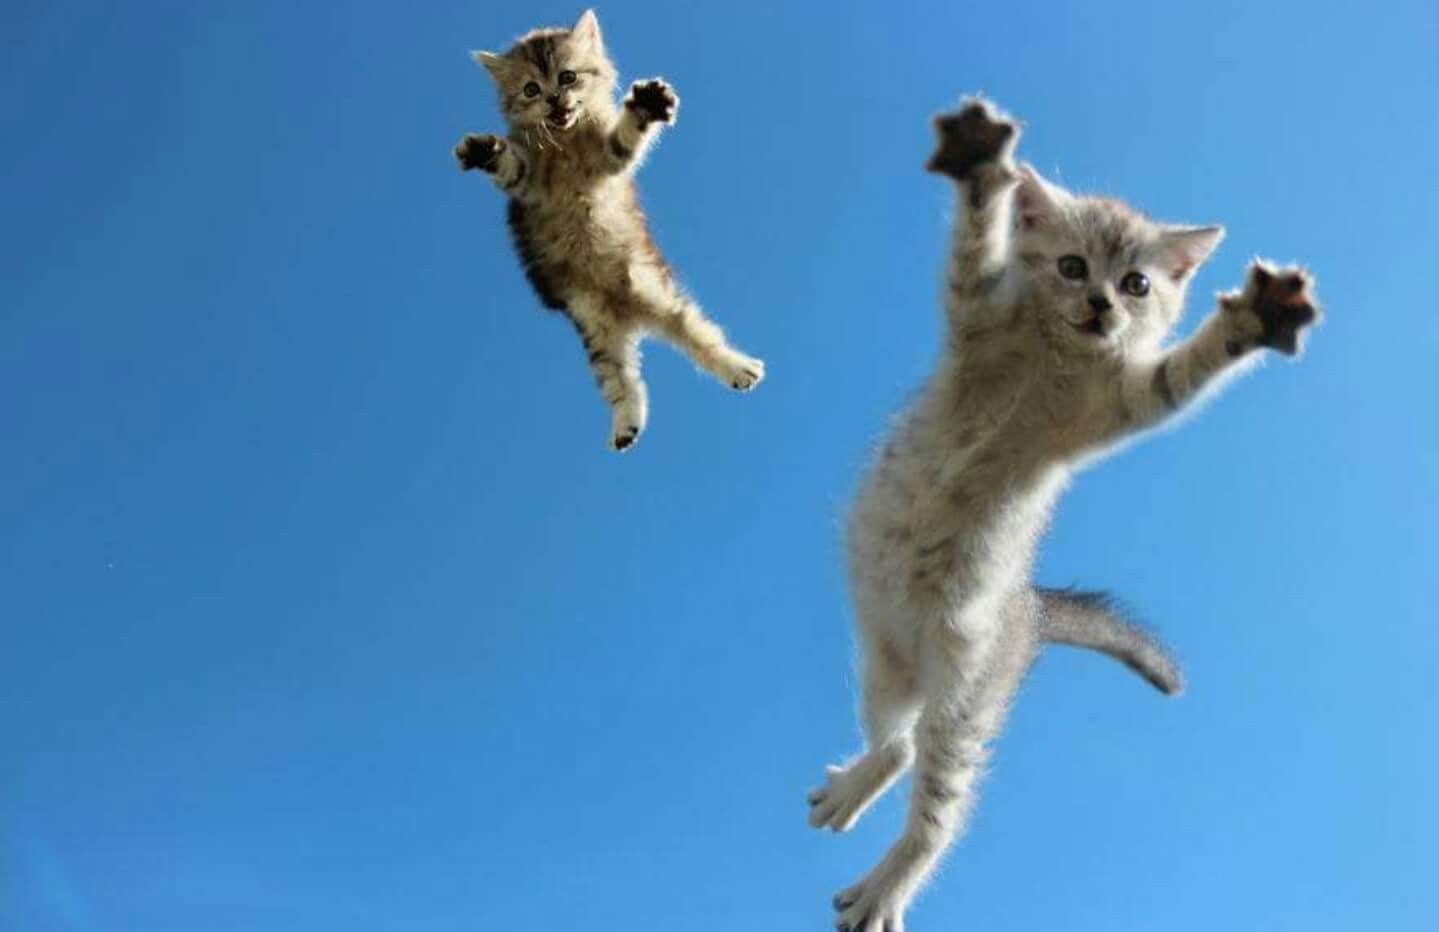 Confira agora as 30 melhores fotos de gatos da internet